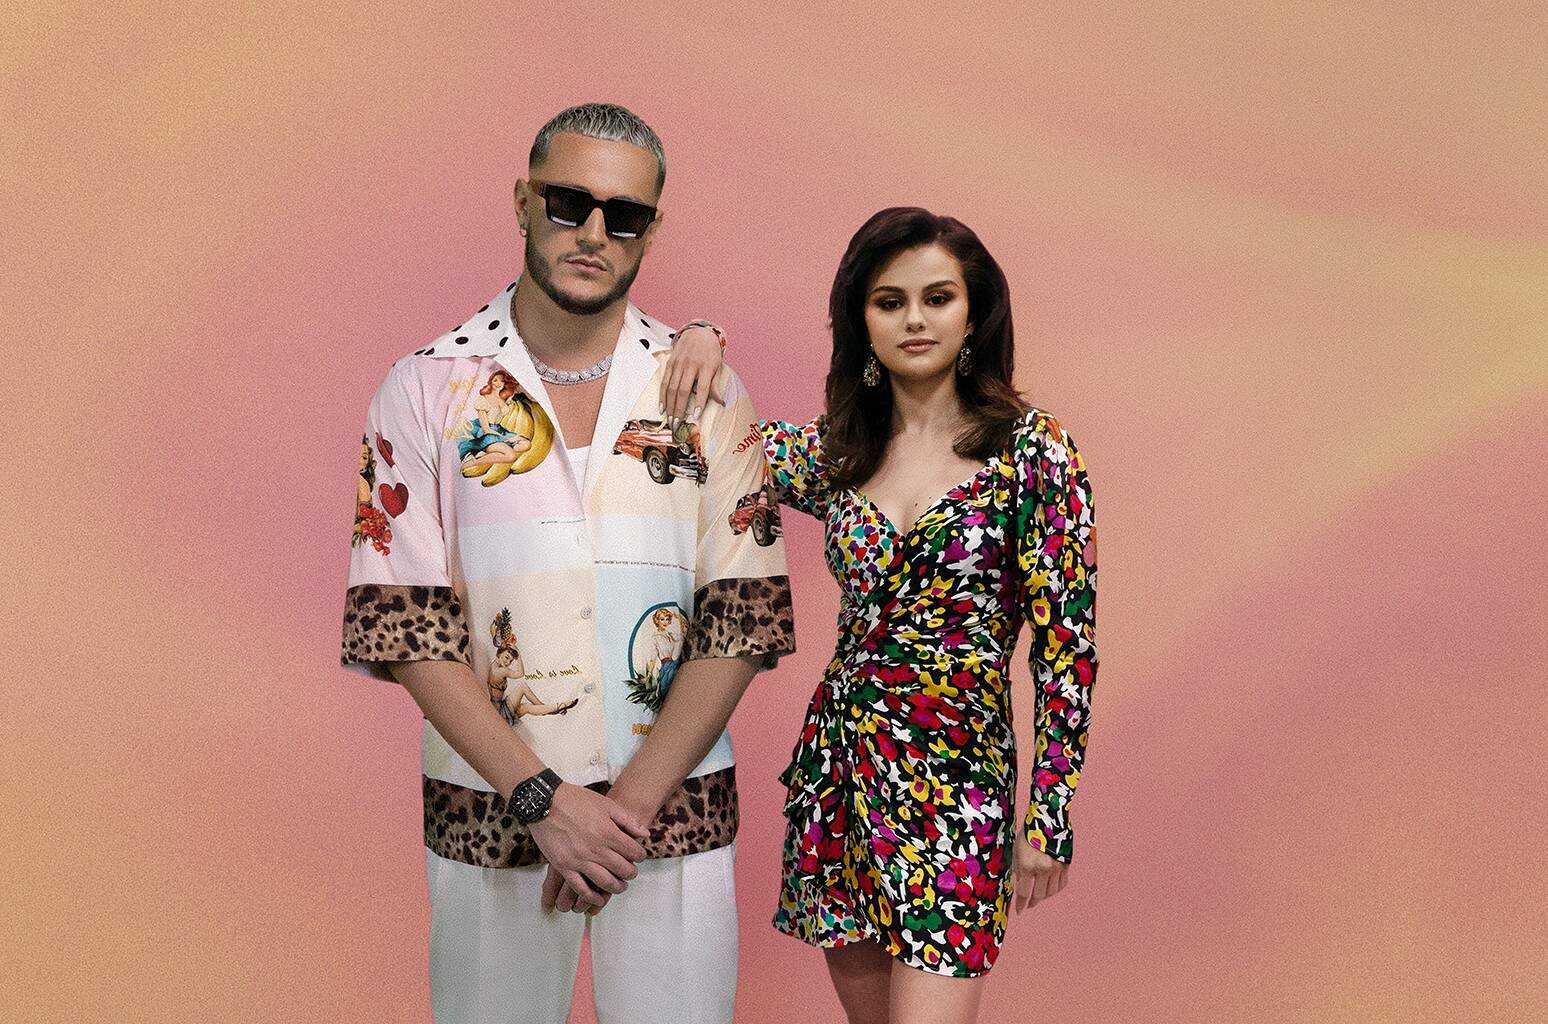 Com um cenário bem colorido e surreal, Selena Gomez lança o clipe de “Selfish Love” em parceria com DJ Snake - Metropolitana FM